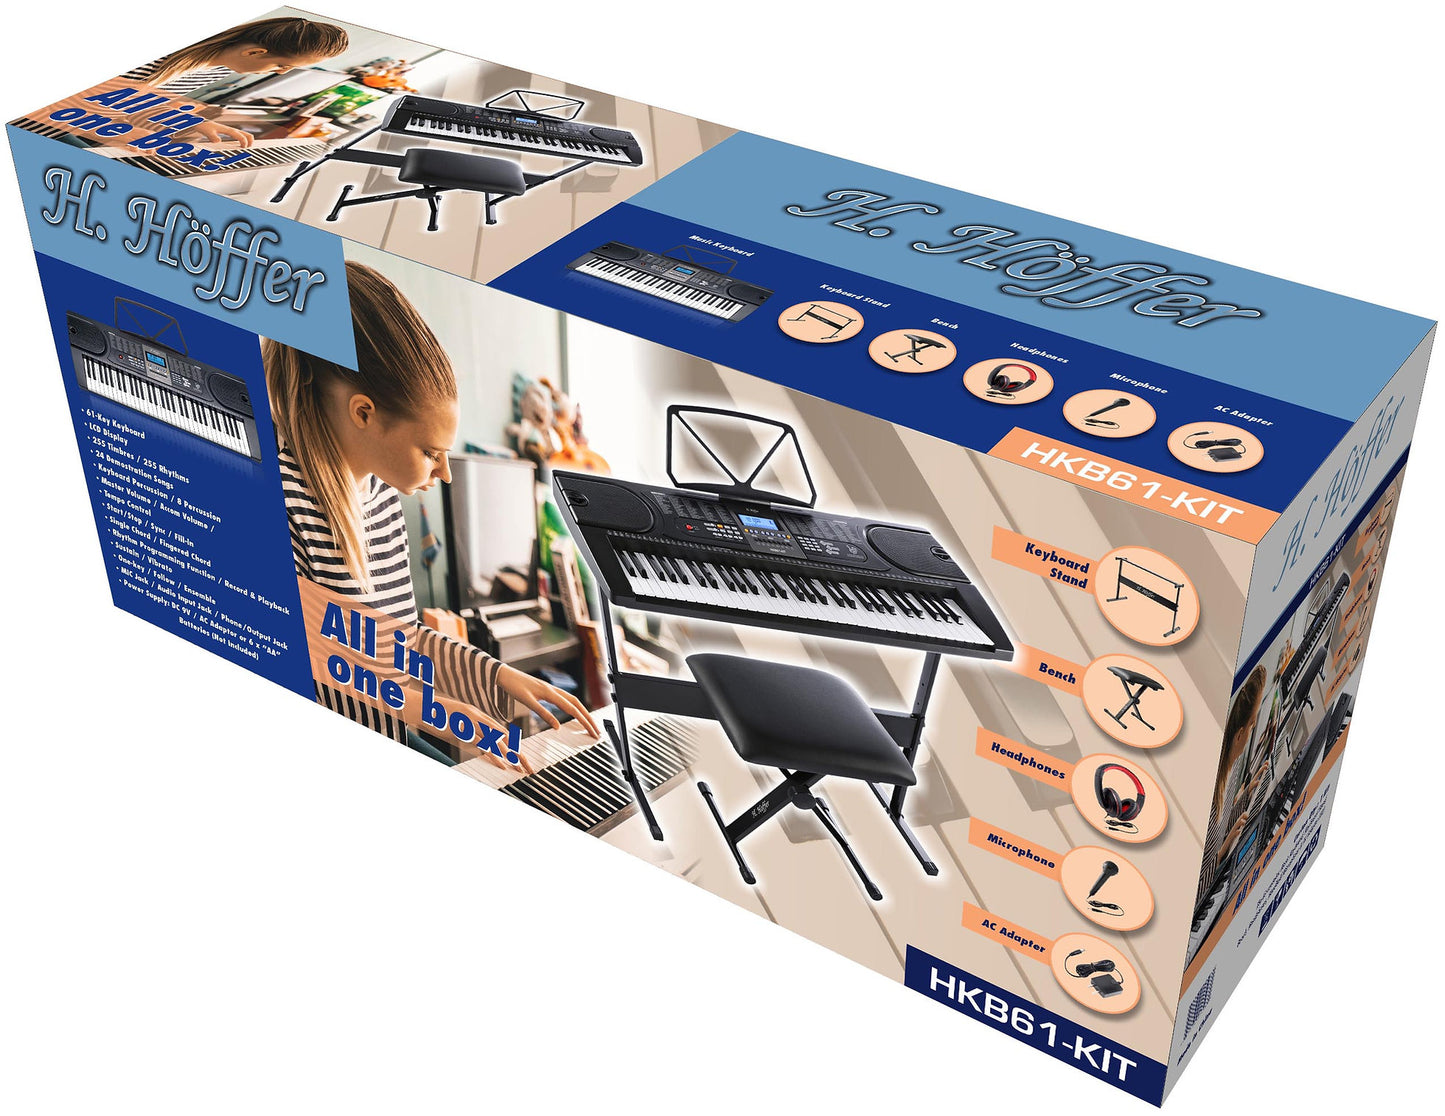 H. Hoffer 61 Key Keyboard Complete Pack